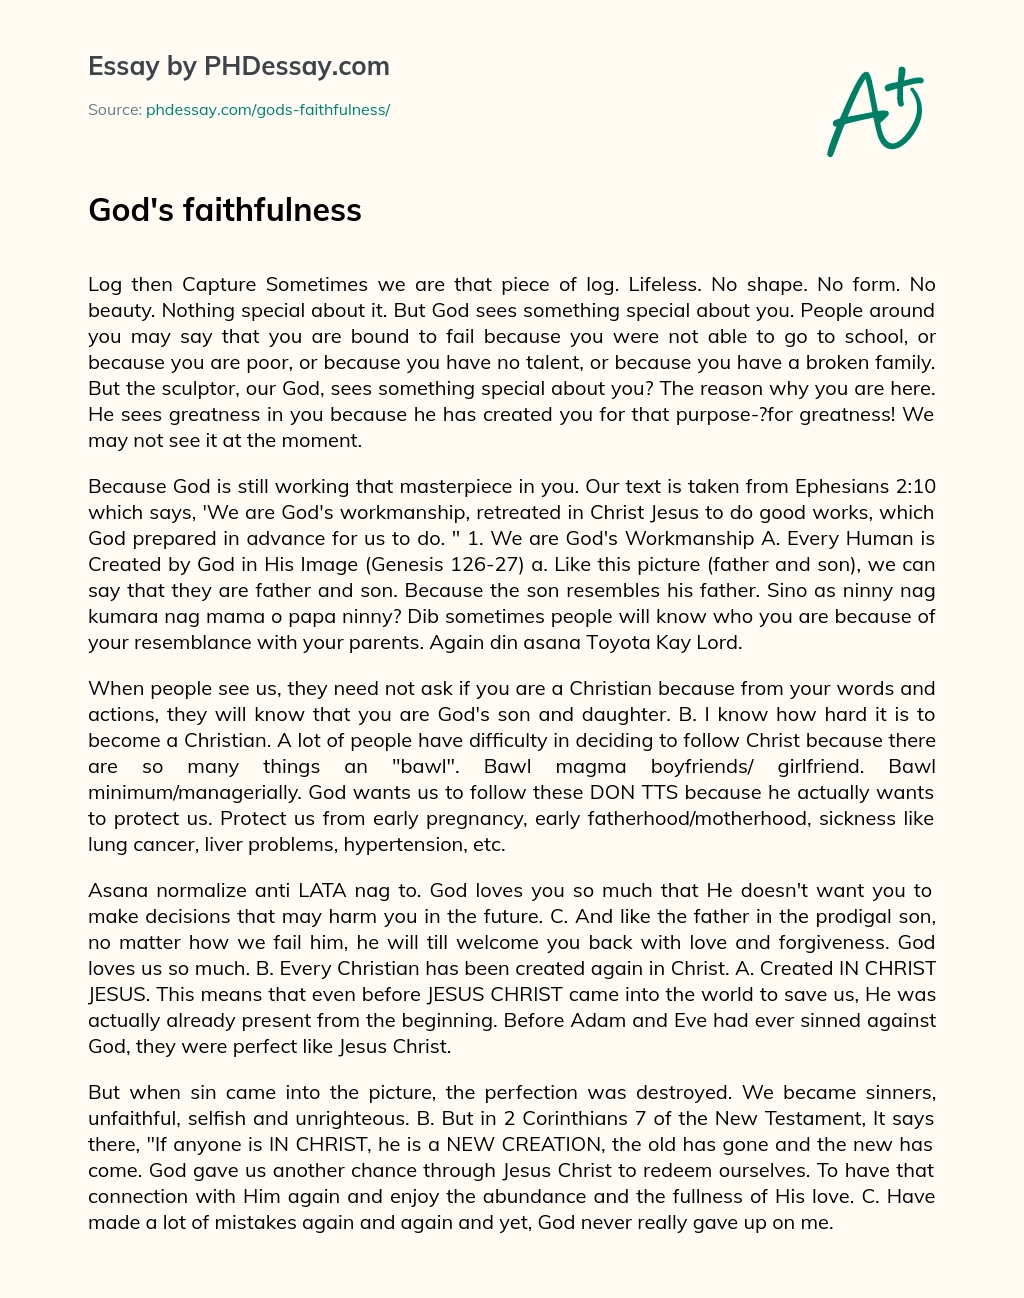 God’s Faithfulness essay